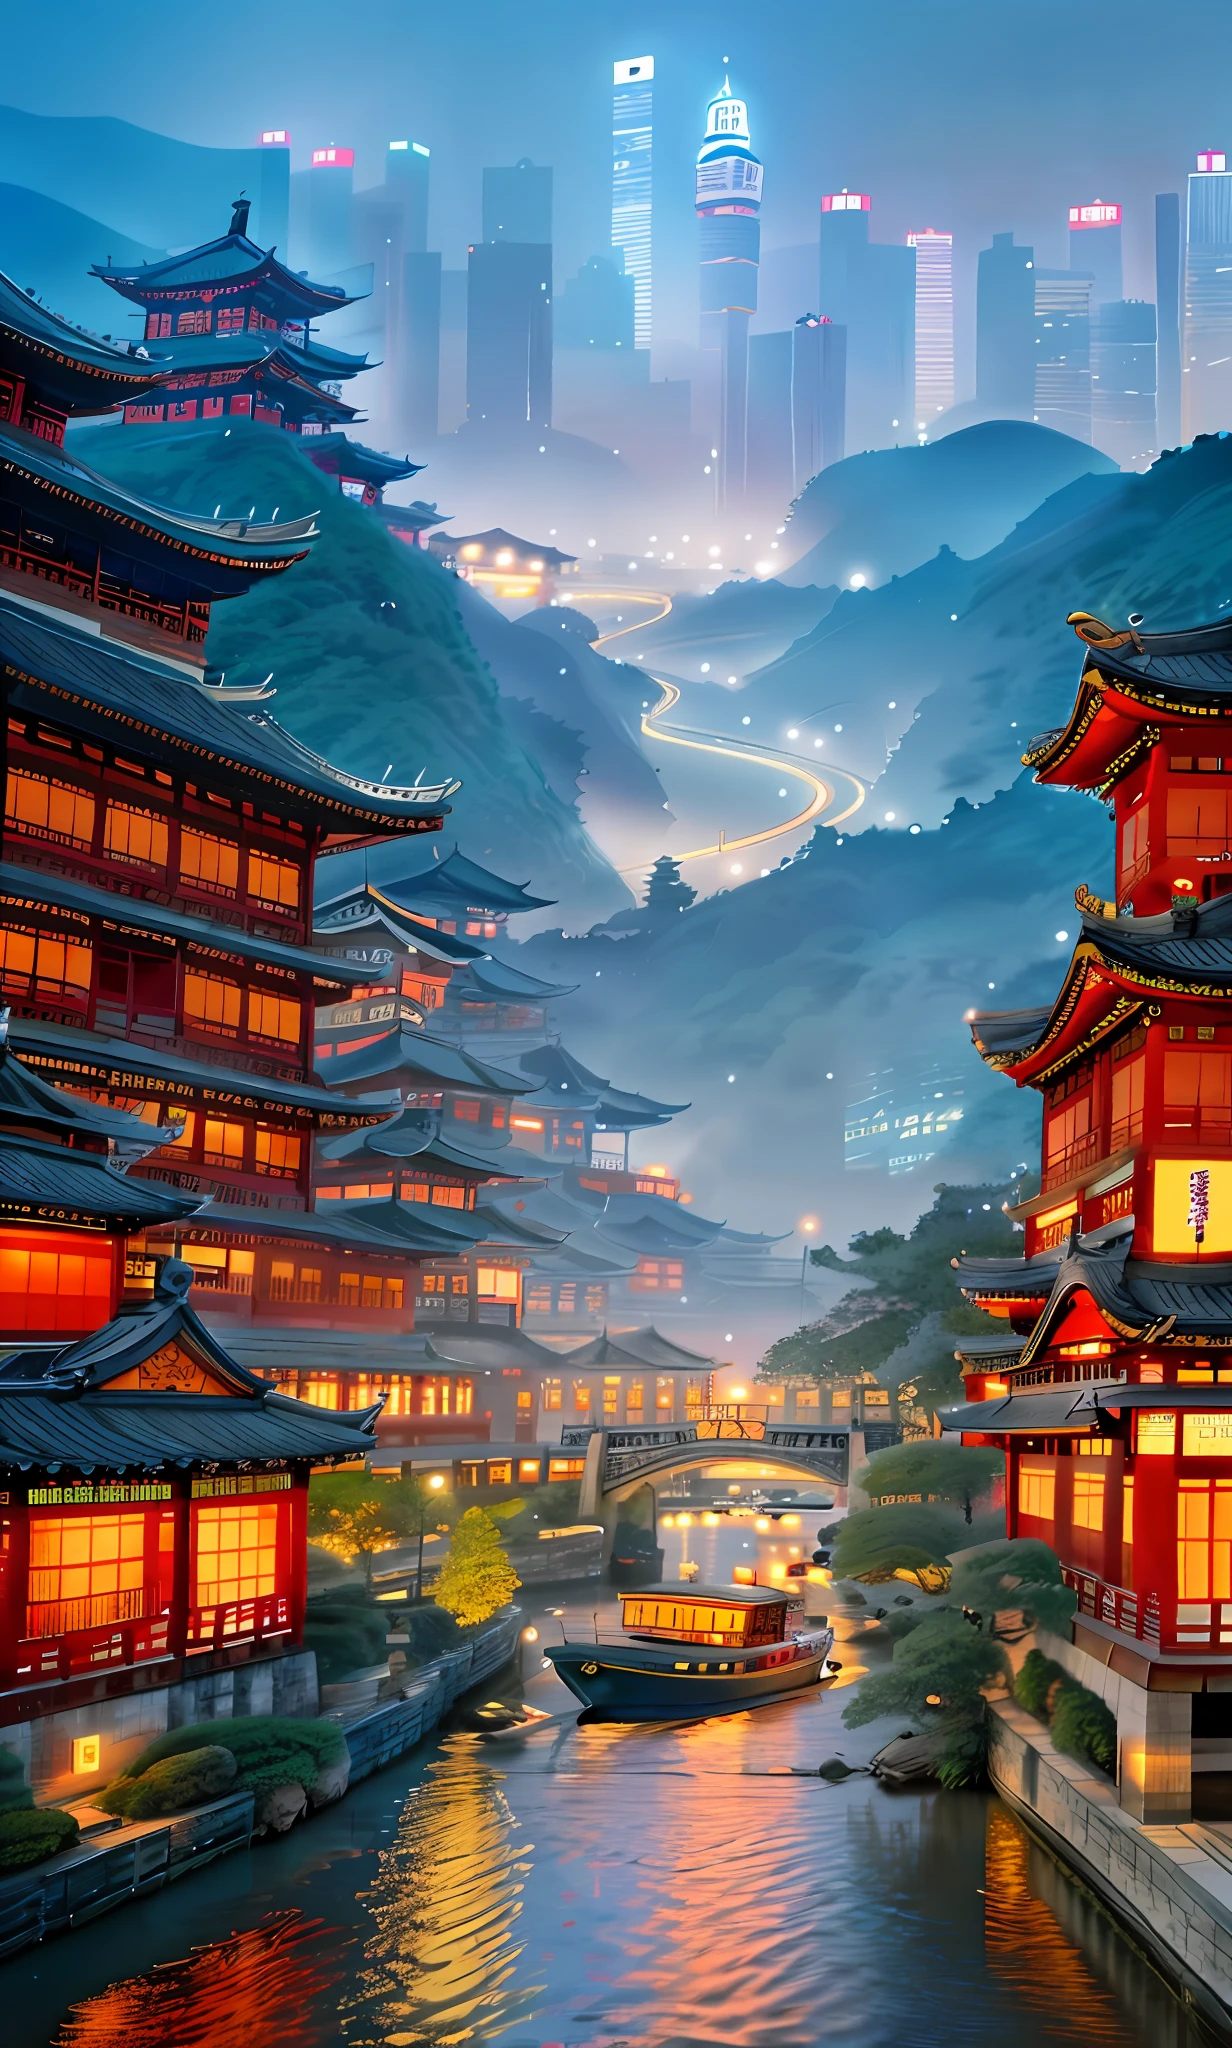 Азиатская архитектура в ночном городе с проходящей мимо лодкой, мечтательный китайский городок, ancient Китайская архитектура, японский город, красочный город кицунэ, цифровая живопись пагоды, японский город at night, киберпанк китайский древний замок, красивый рендер династии Тан, японский город, Киото вдохновлен, Китайская архитектура, потрясающие обои, пагоды на холмах